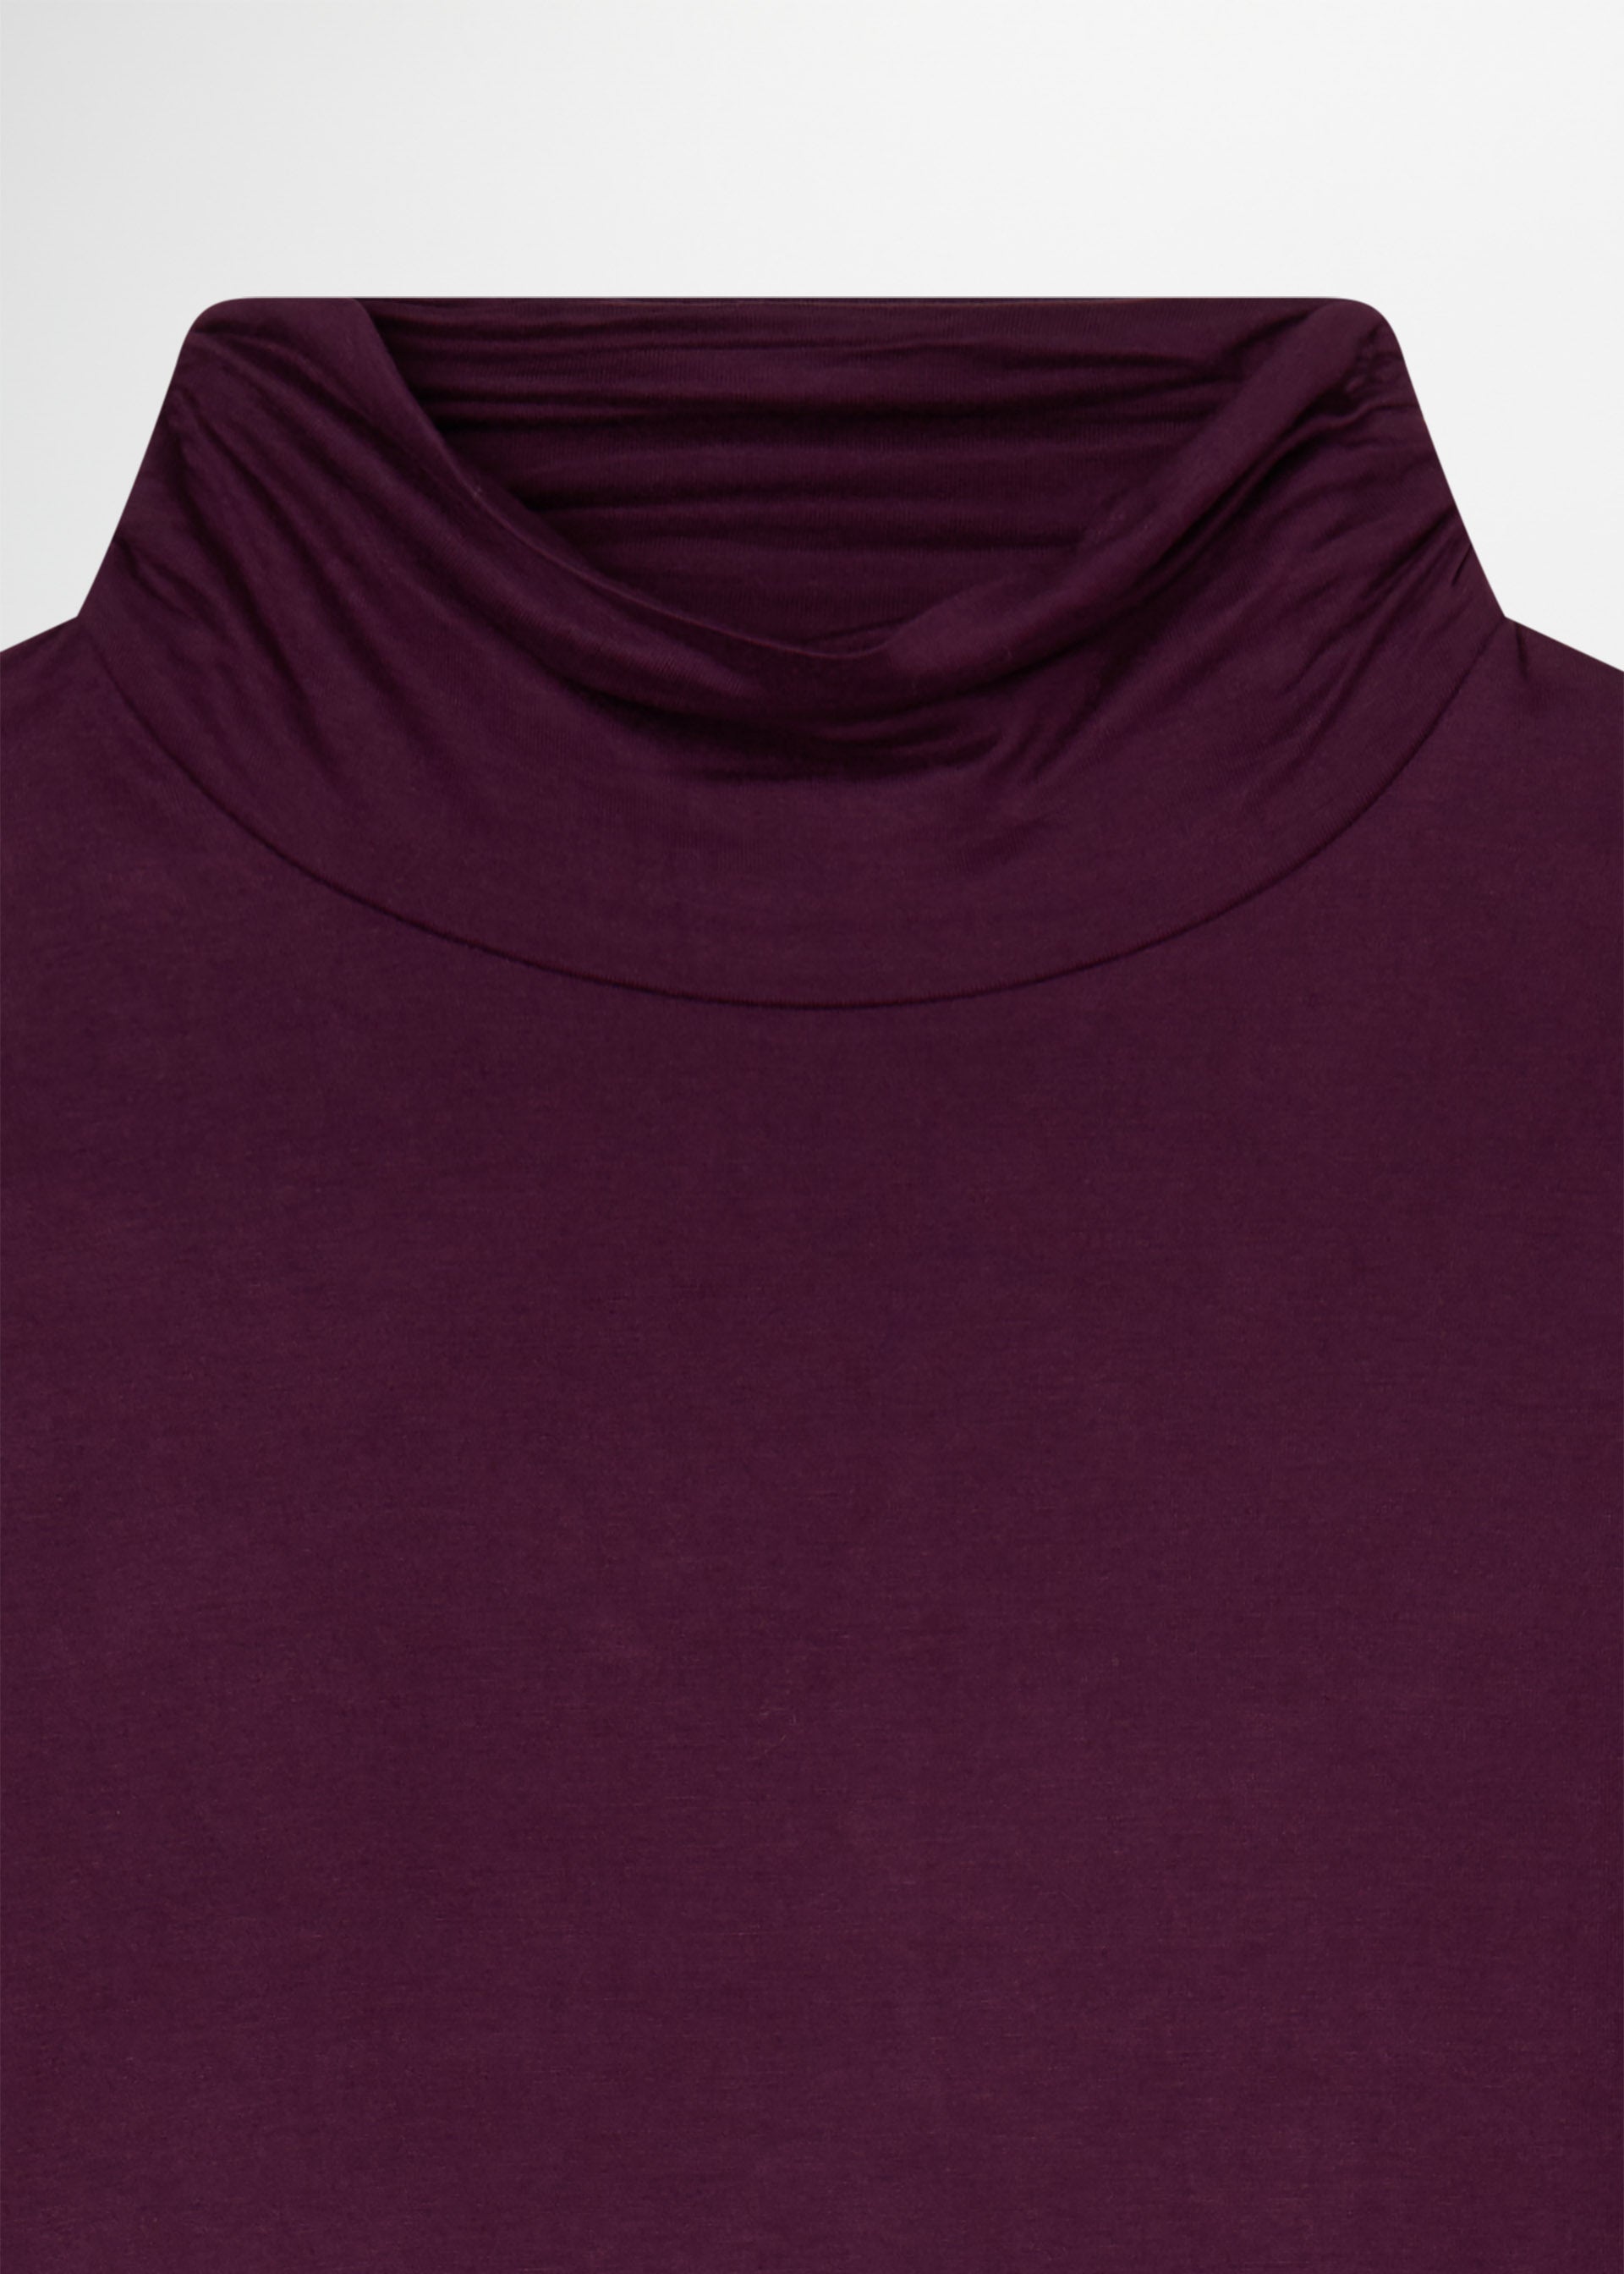 Camiseta cuello alto – Conbipel